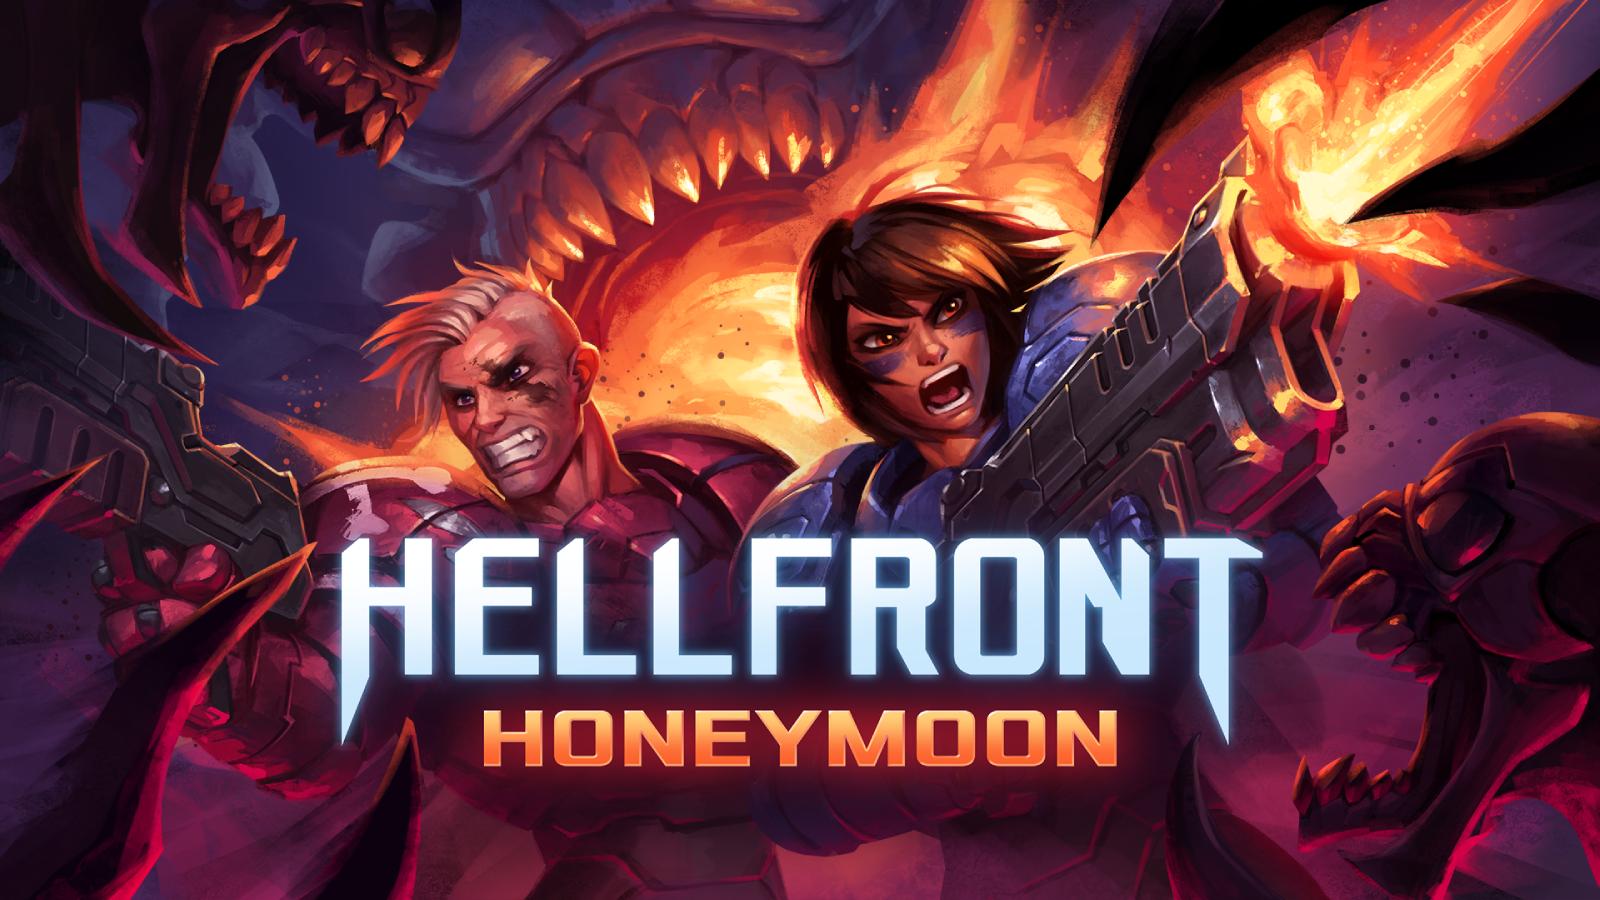 Hellfront Honeymoon